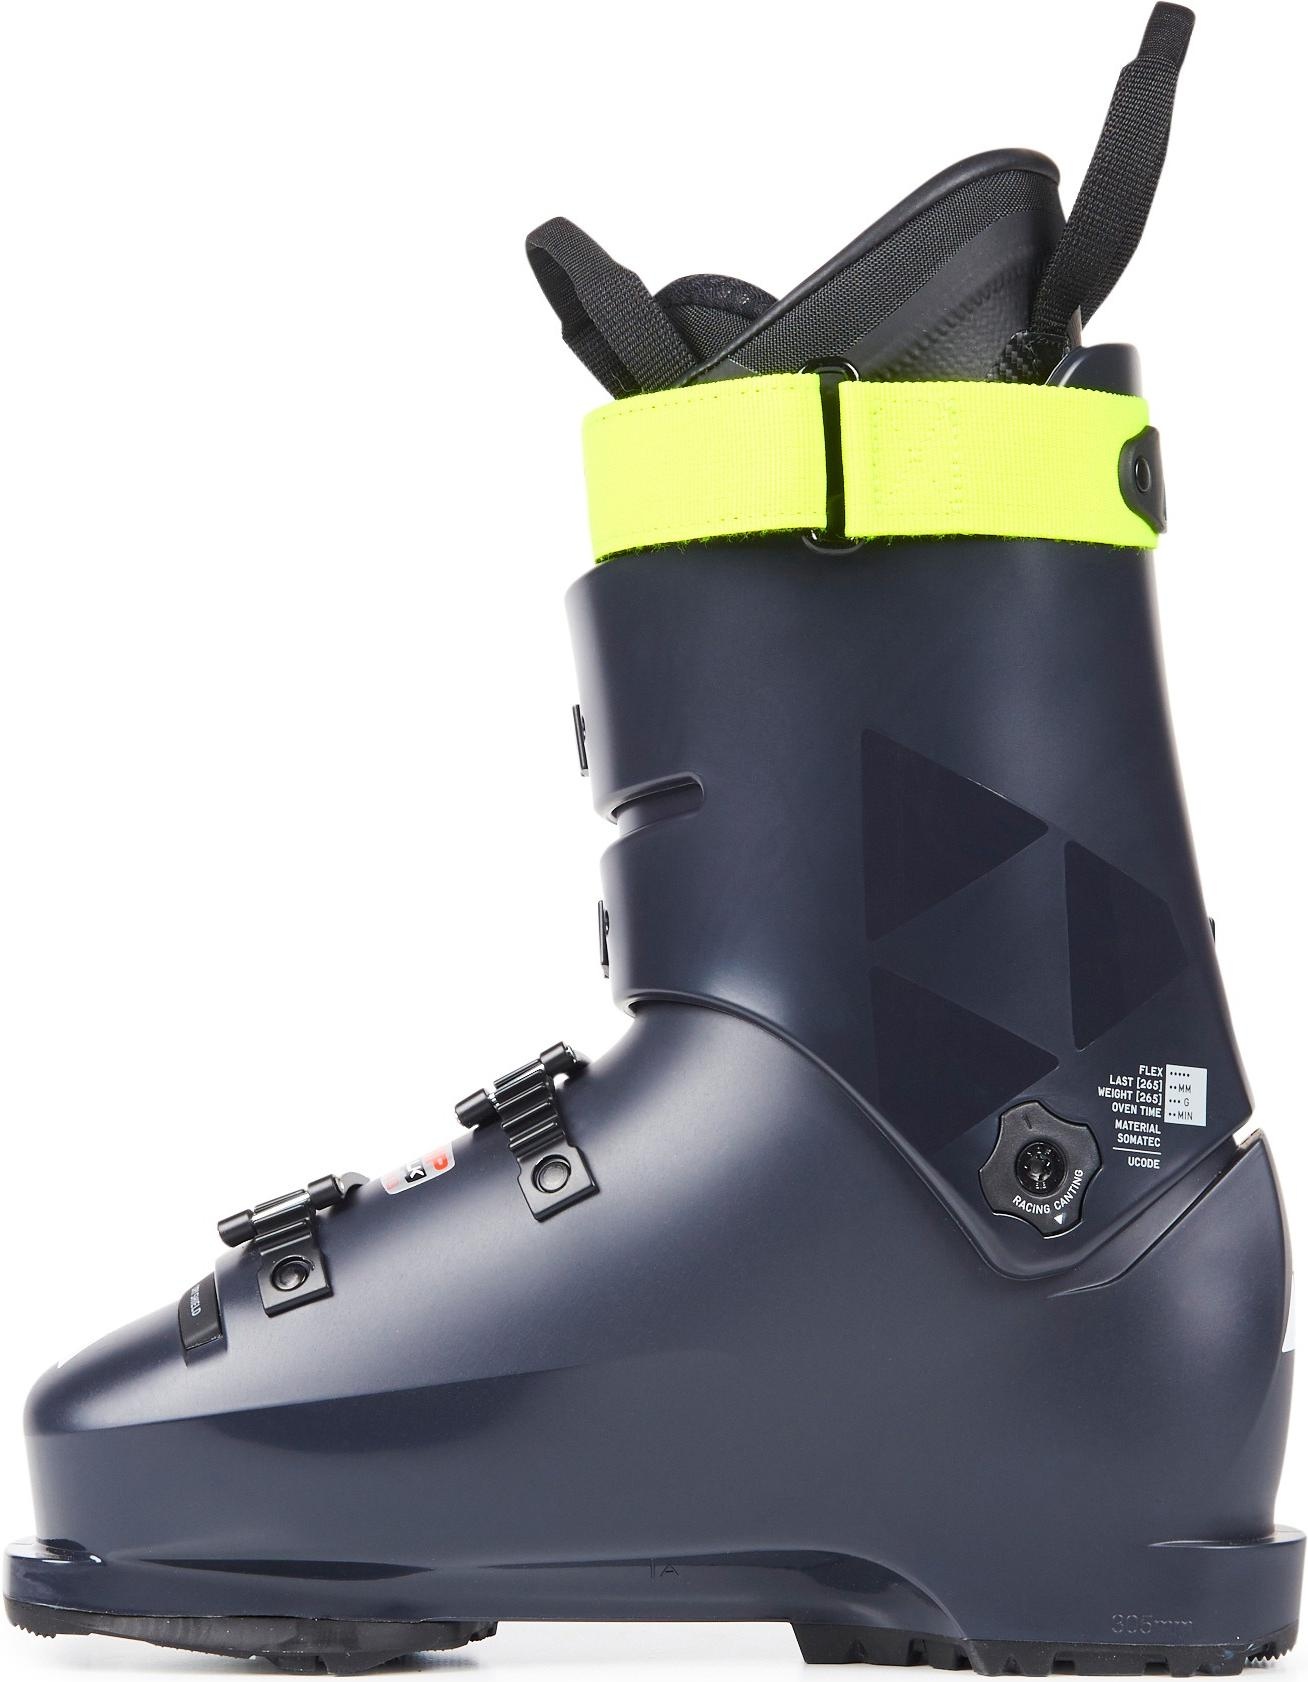 Горнолыжные ботинки Fischer Rc4 The Curv 110 Vacuum Walk 2021, darkgrey/darkgrey, 29.5